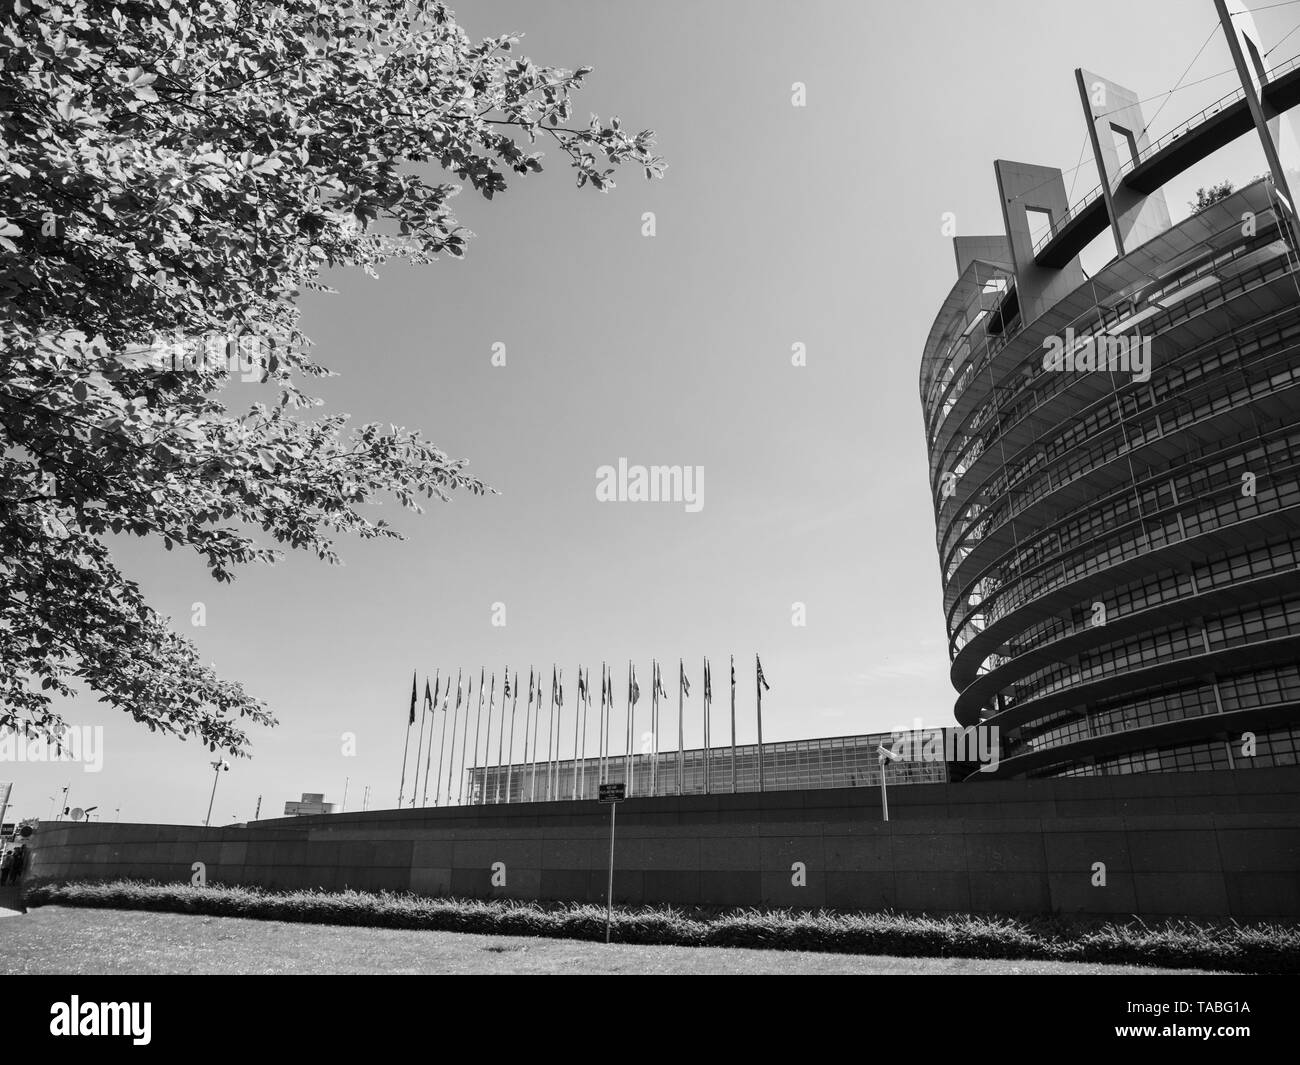 Ampia facciata del Parlamento europeo vista attraverso gli alberi della sede di Strasburgo un giorno prima del 2019 sulle elezioni per il Parlamento europeo - cielo chiaro immagine in bianco e nero Foto Stock